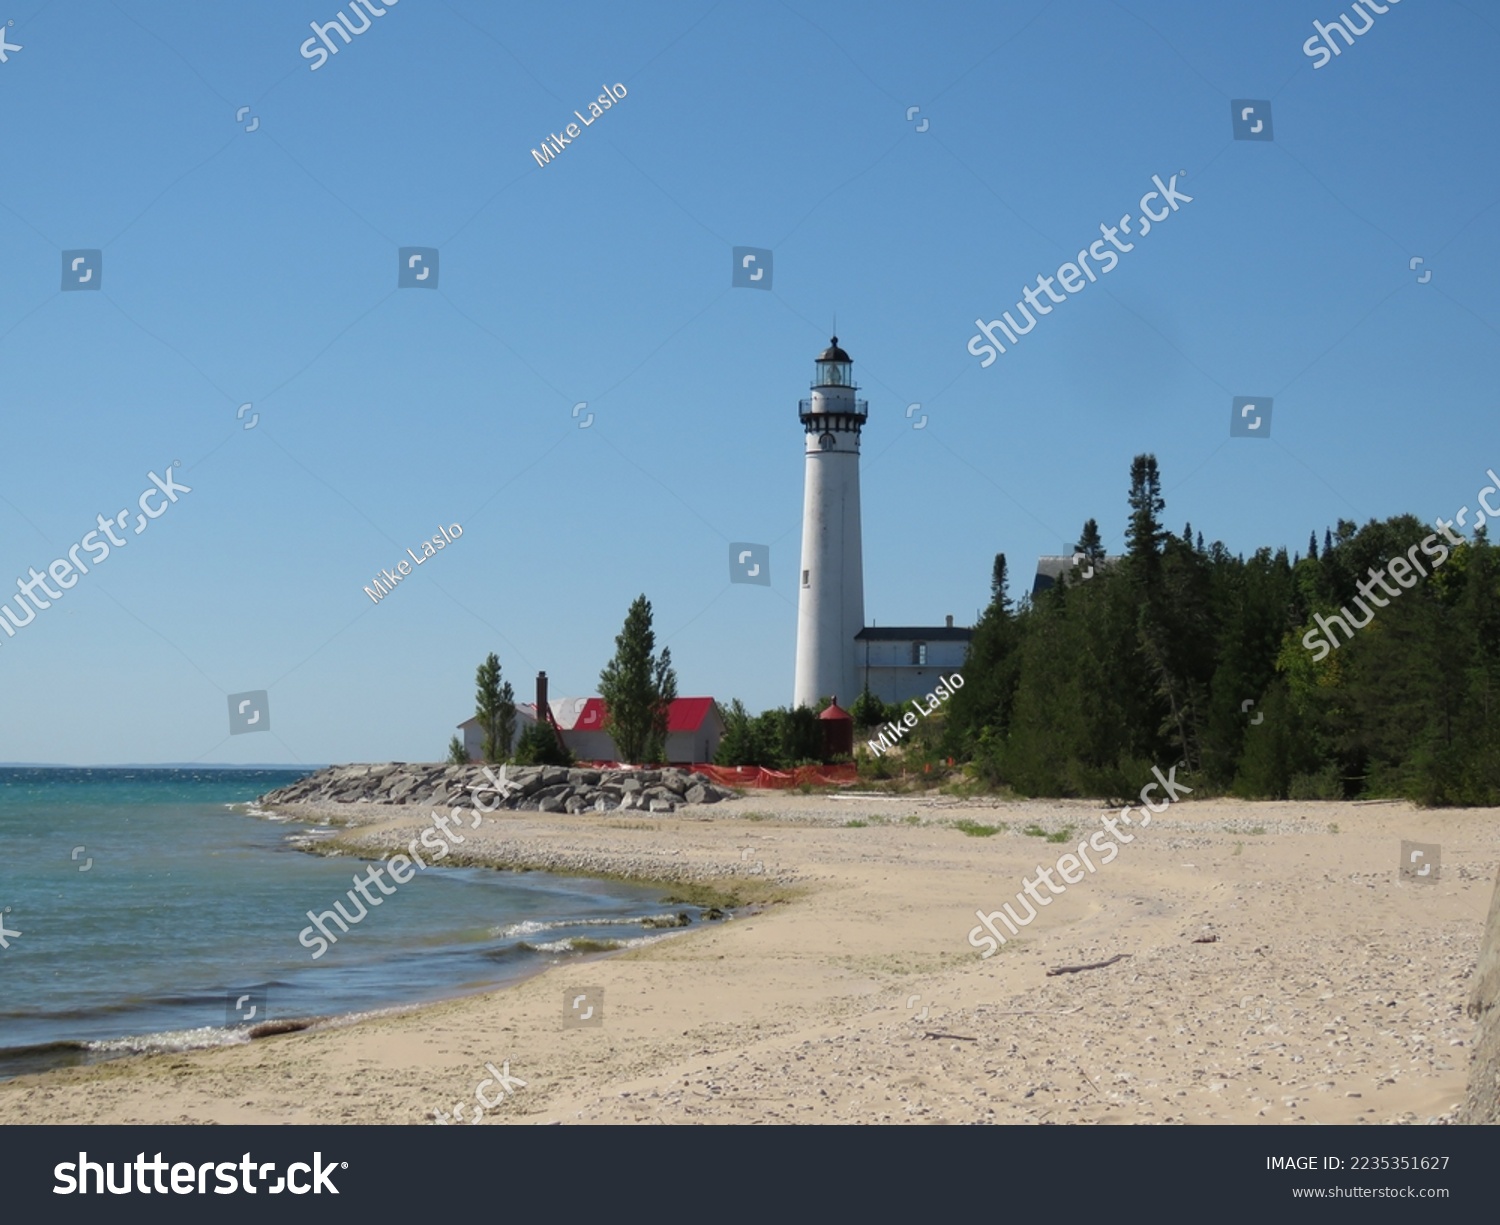 South Manitou Island Lighthouse on Lake Michigan, USA. #2235351627